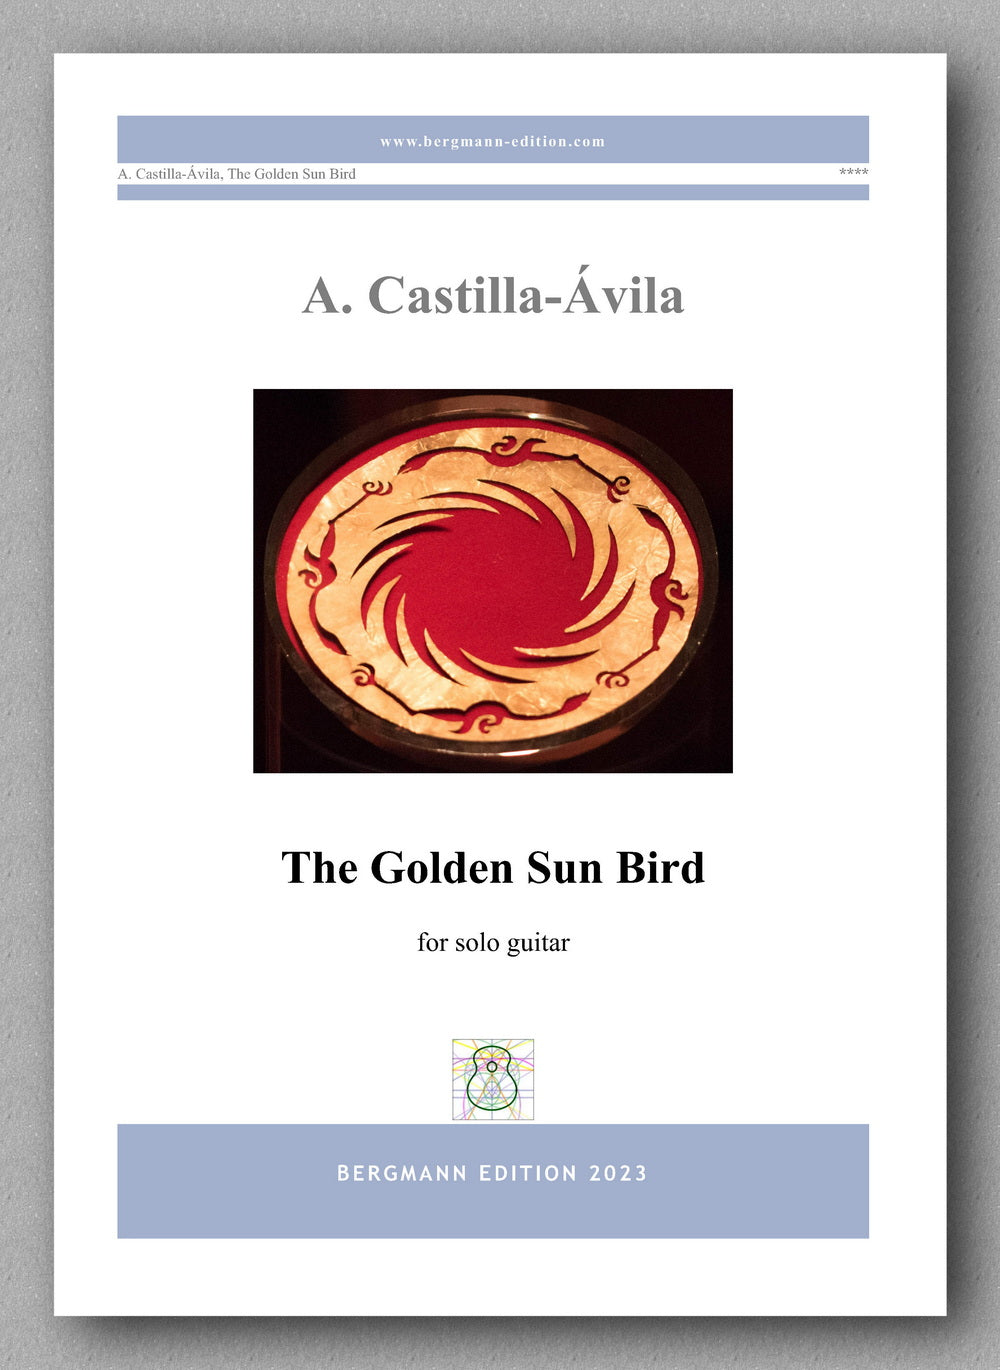 Agustin Castilla-Ávila, The Golden Sun Bird - preview of the cover